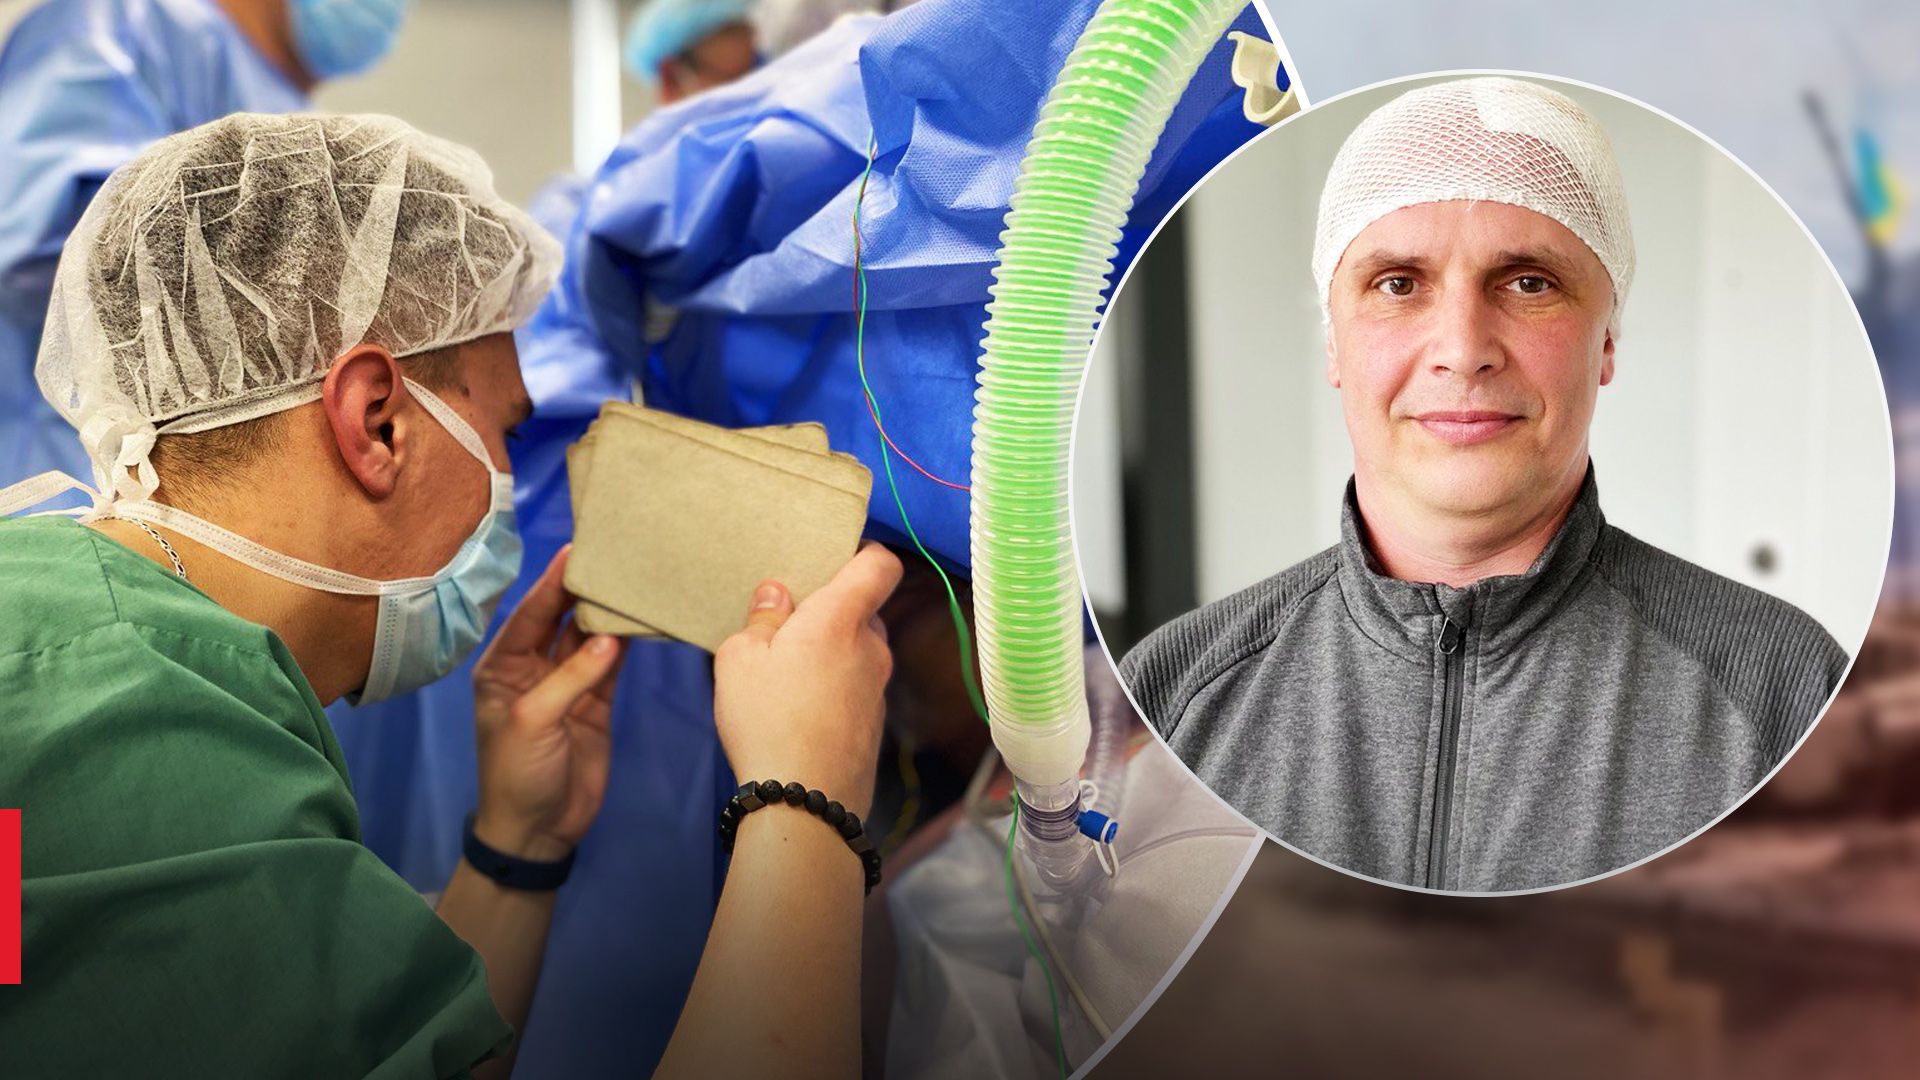 50 минут в сознании при удалении опухоли мозга: во Львове провели уникальную операцию - Здоровье 24